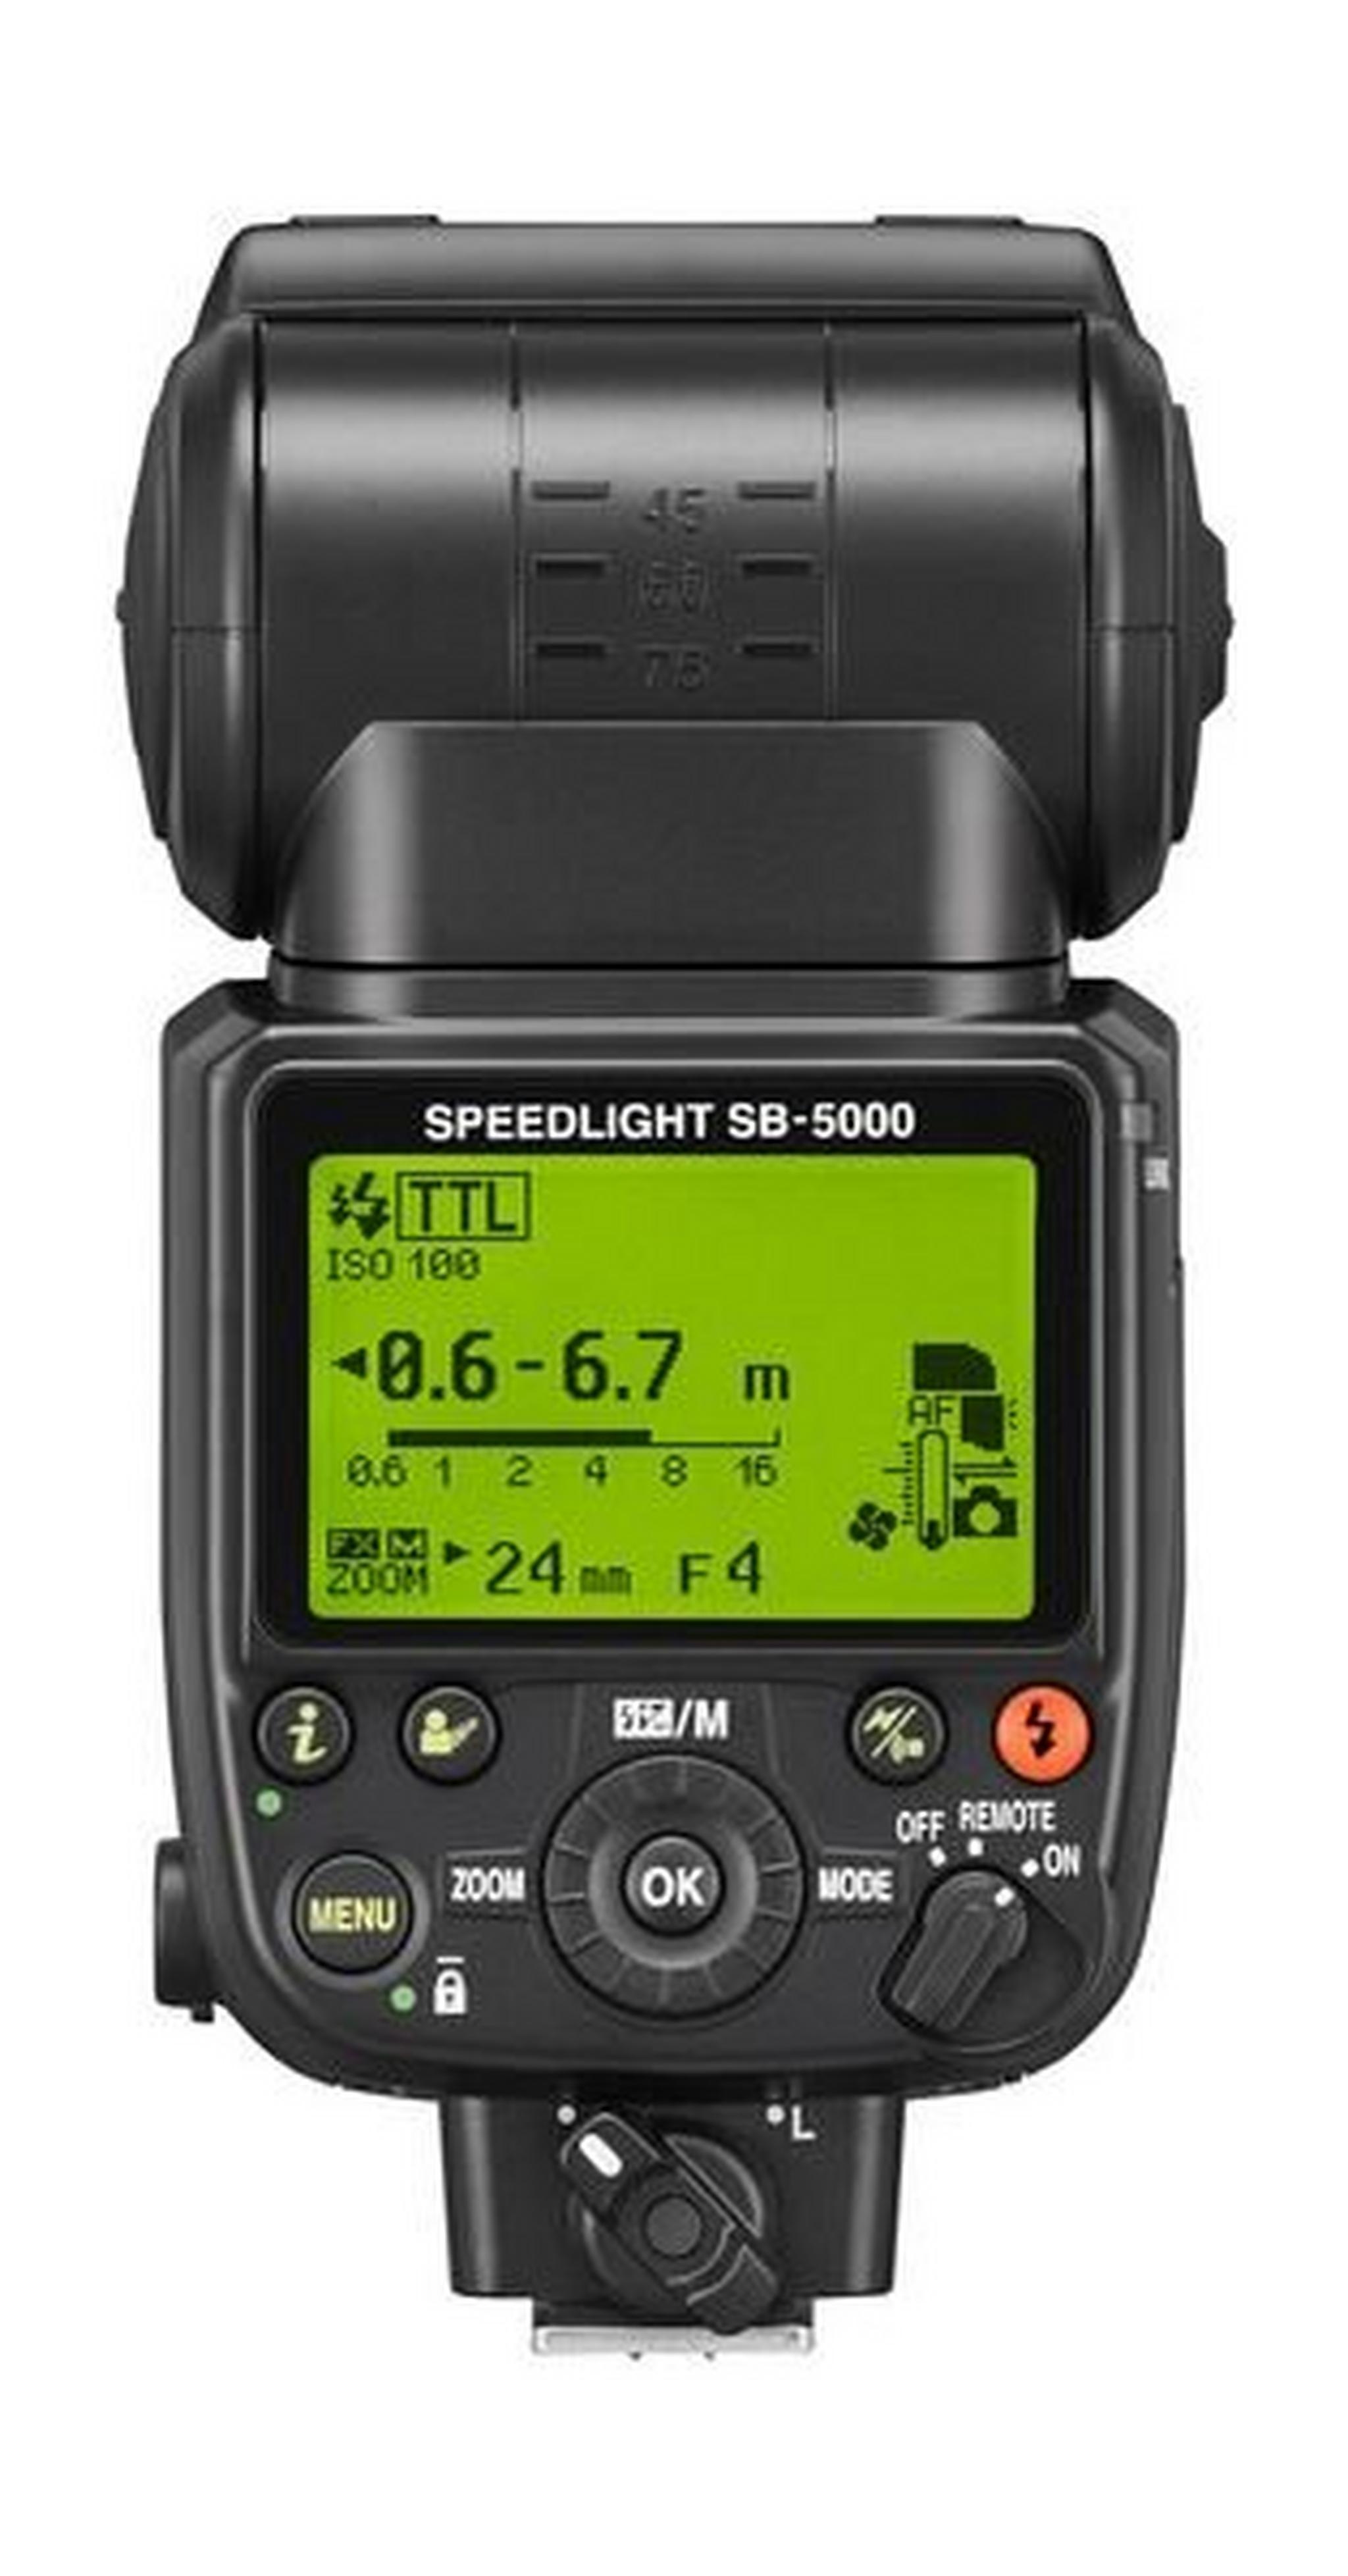 Nikon SB-5000 Speedlight On Camera Flash